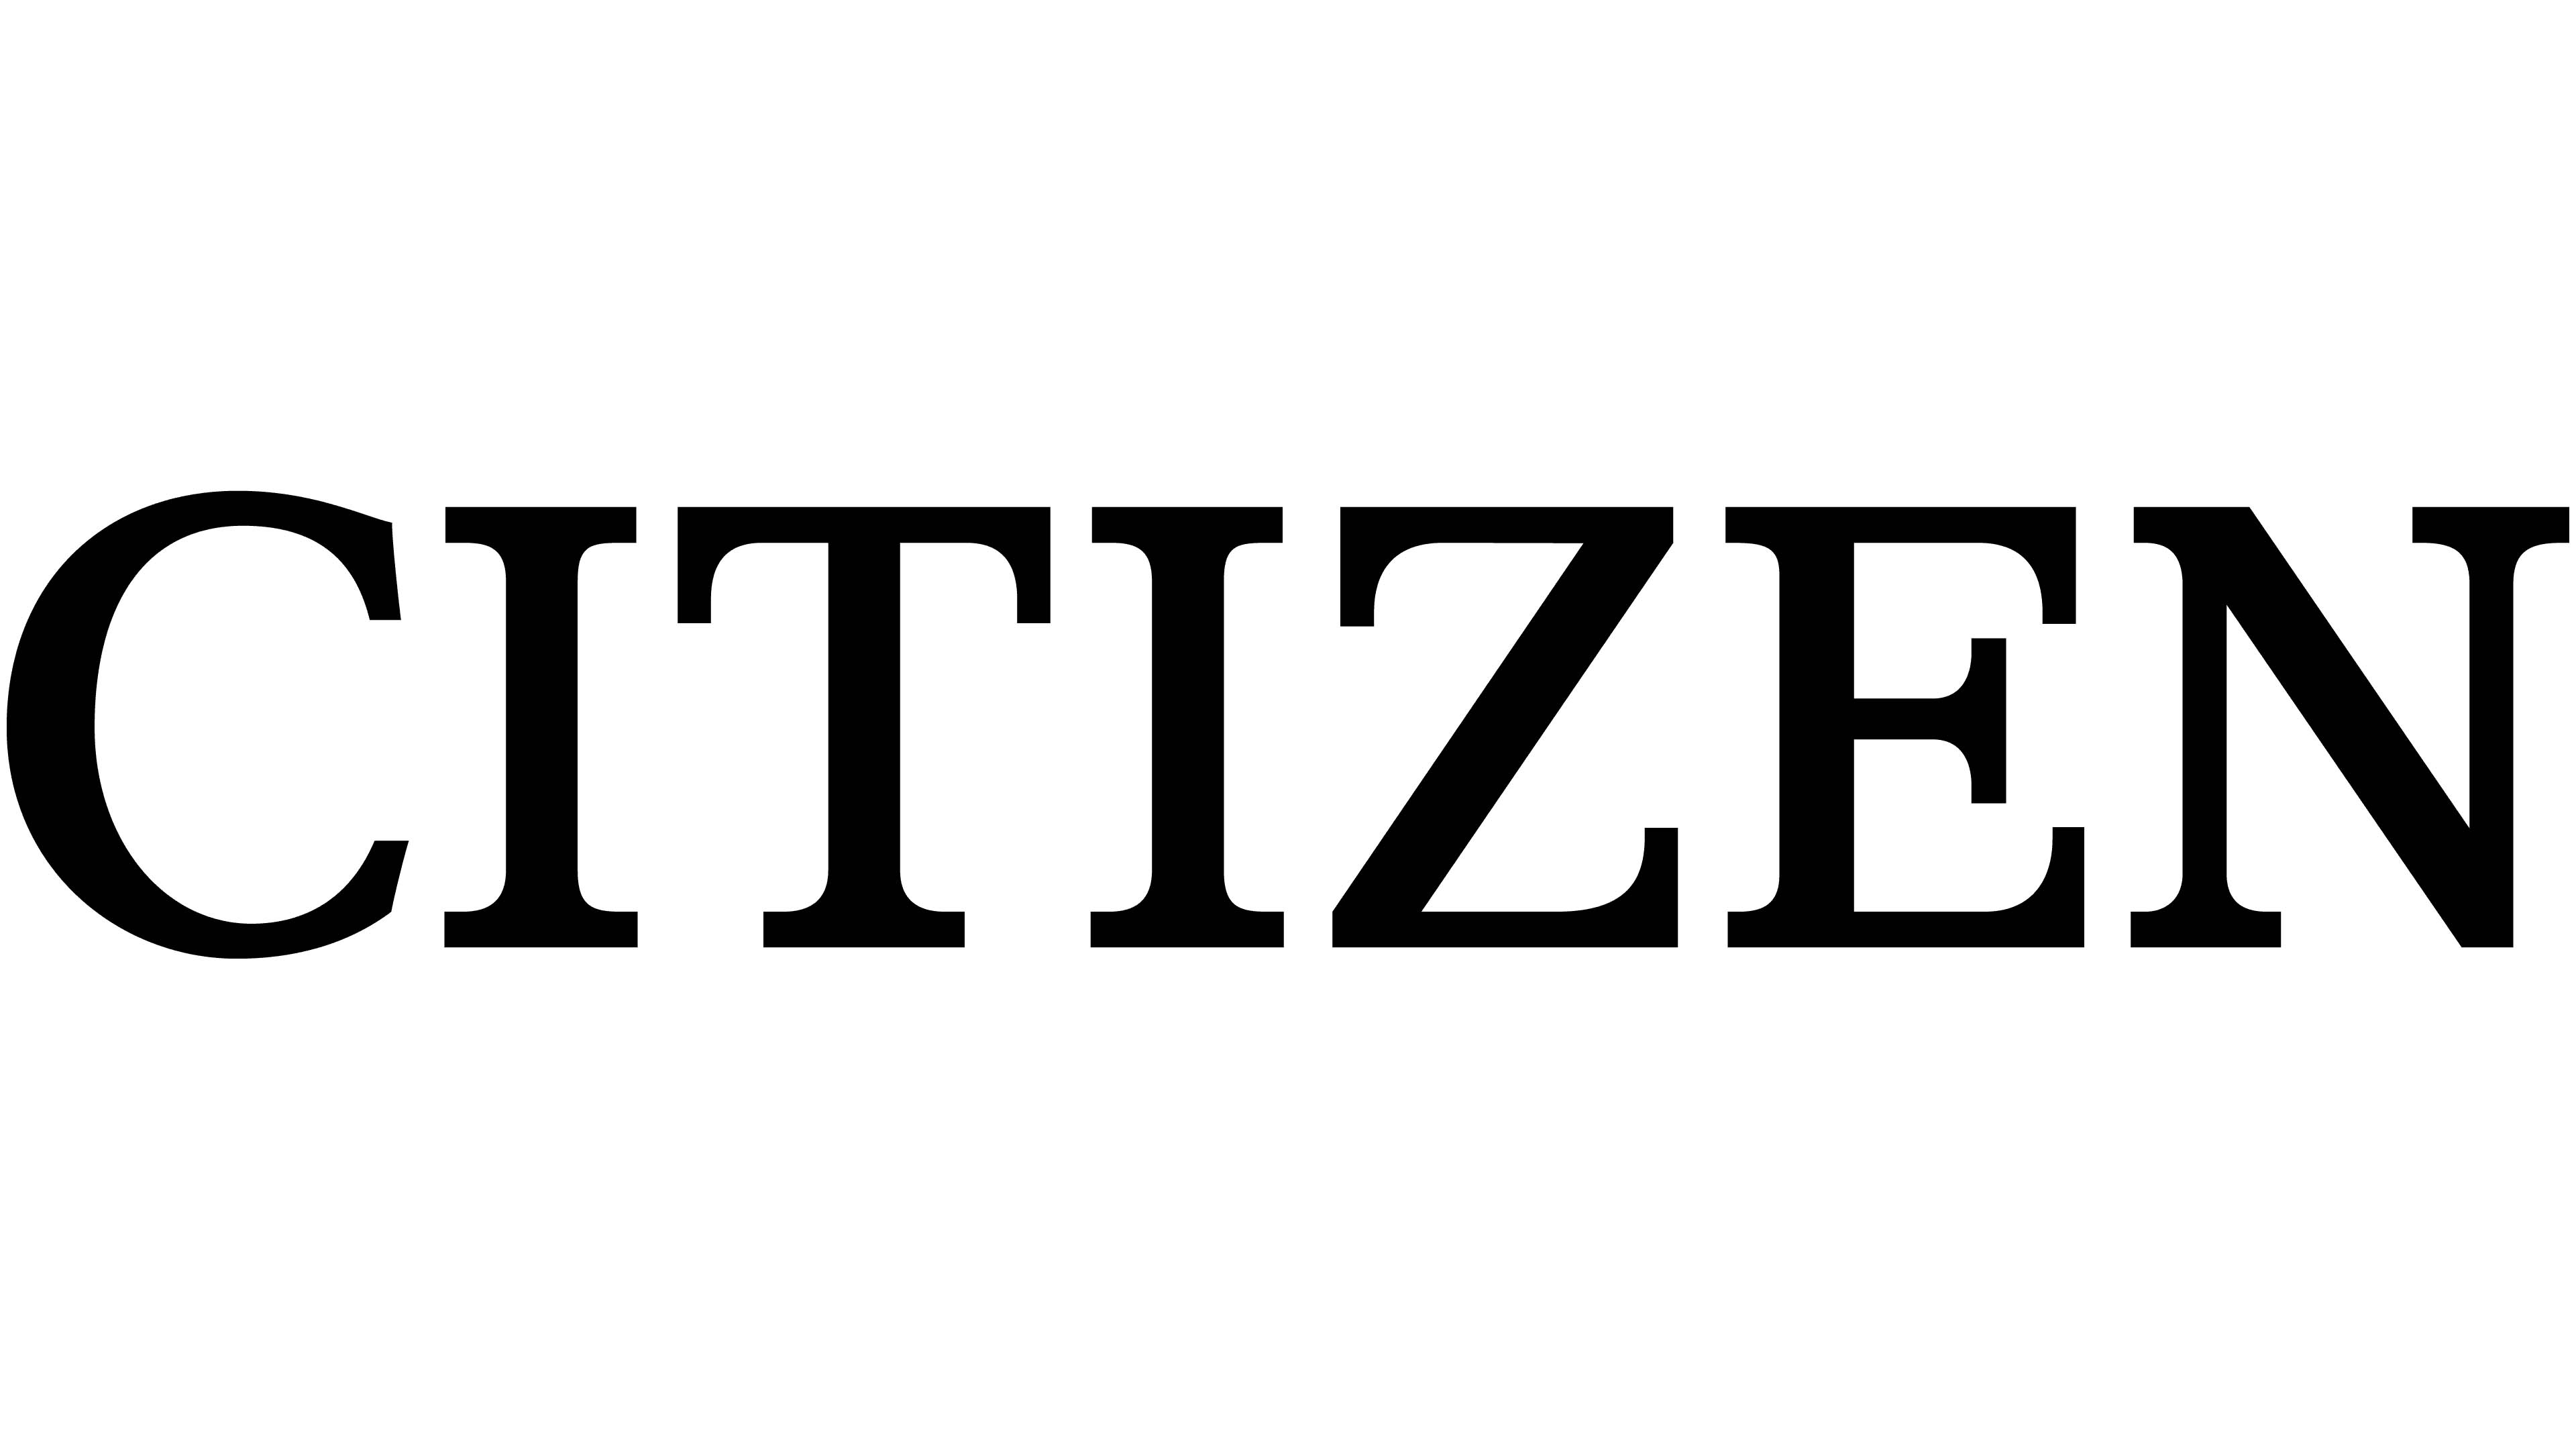 Mẫu thiết kế logo thương hiệu công ty CITIZEN